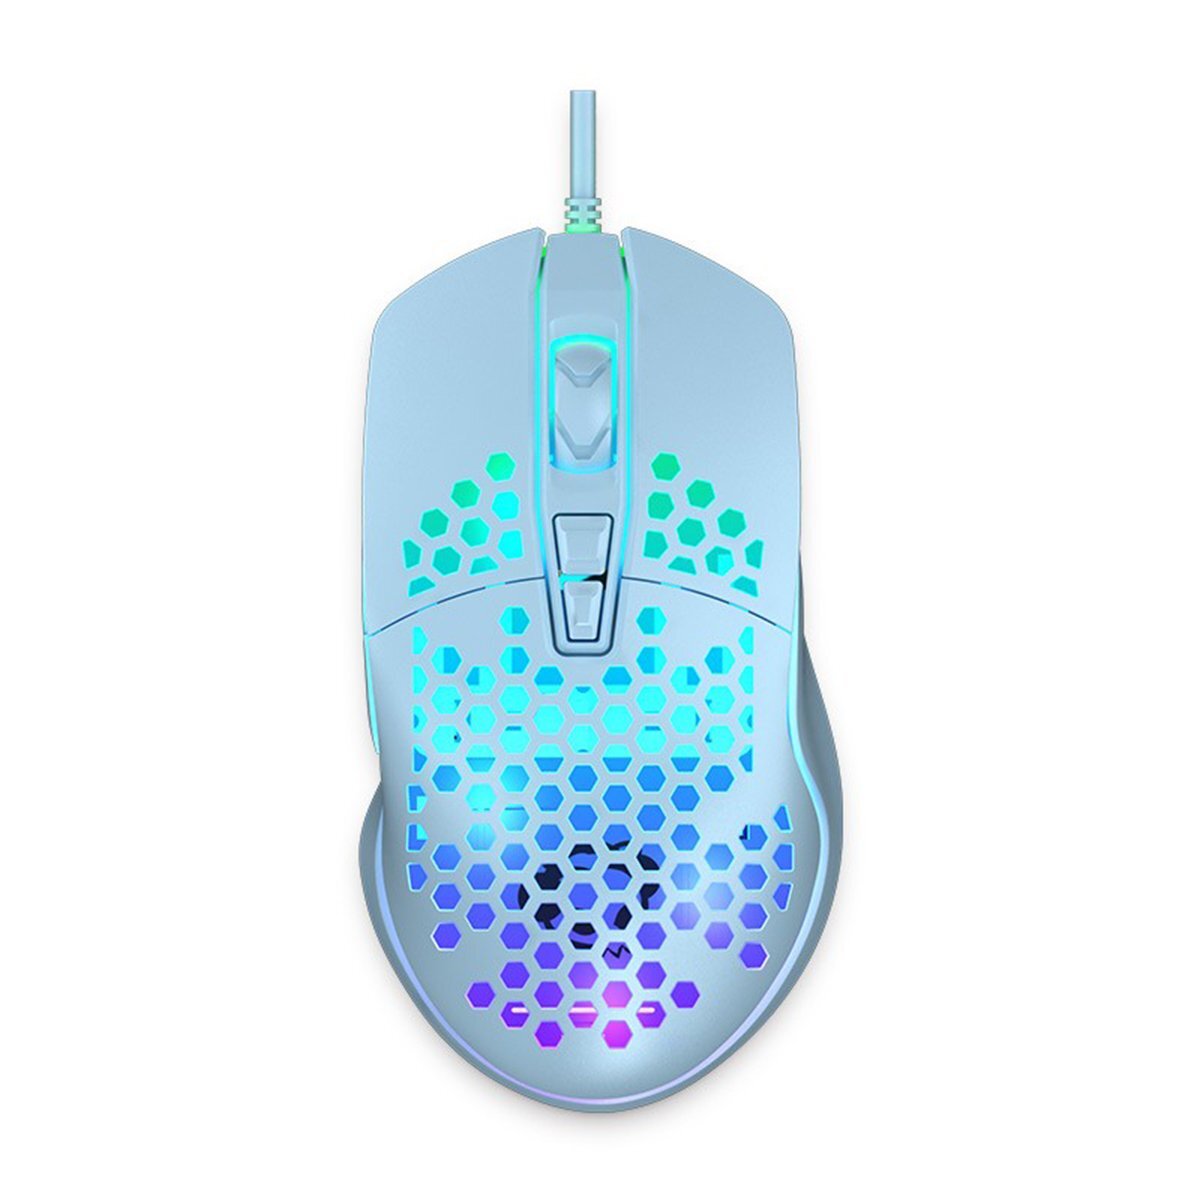 Chuột máy tính - Mouse Akko LW325